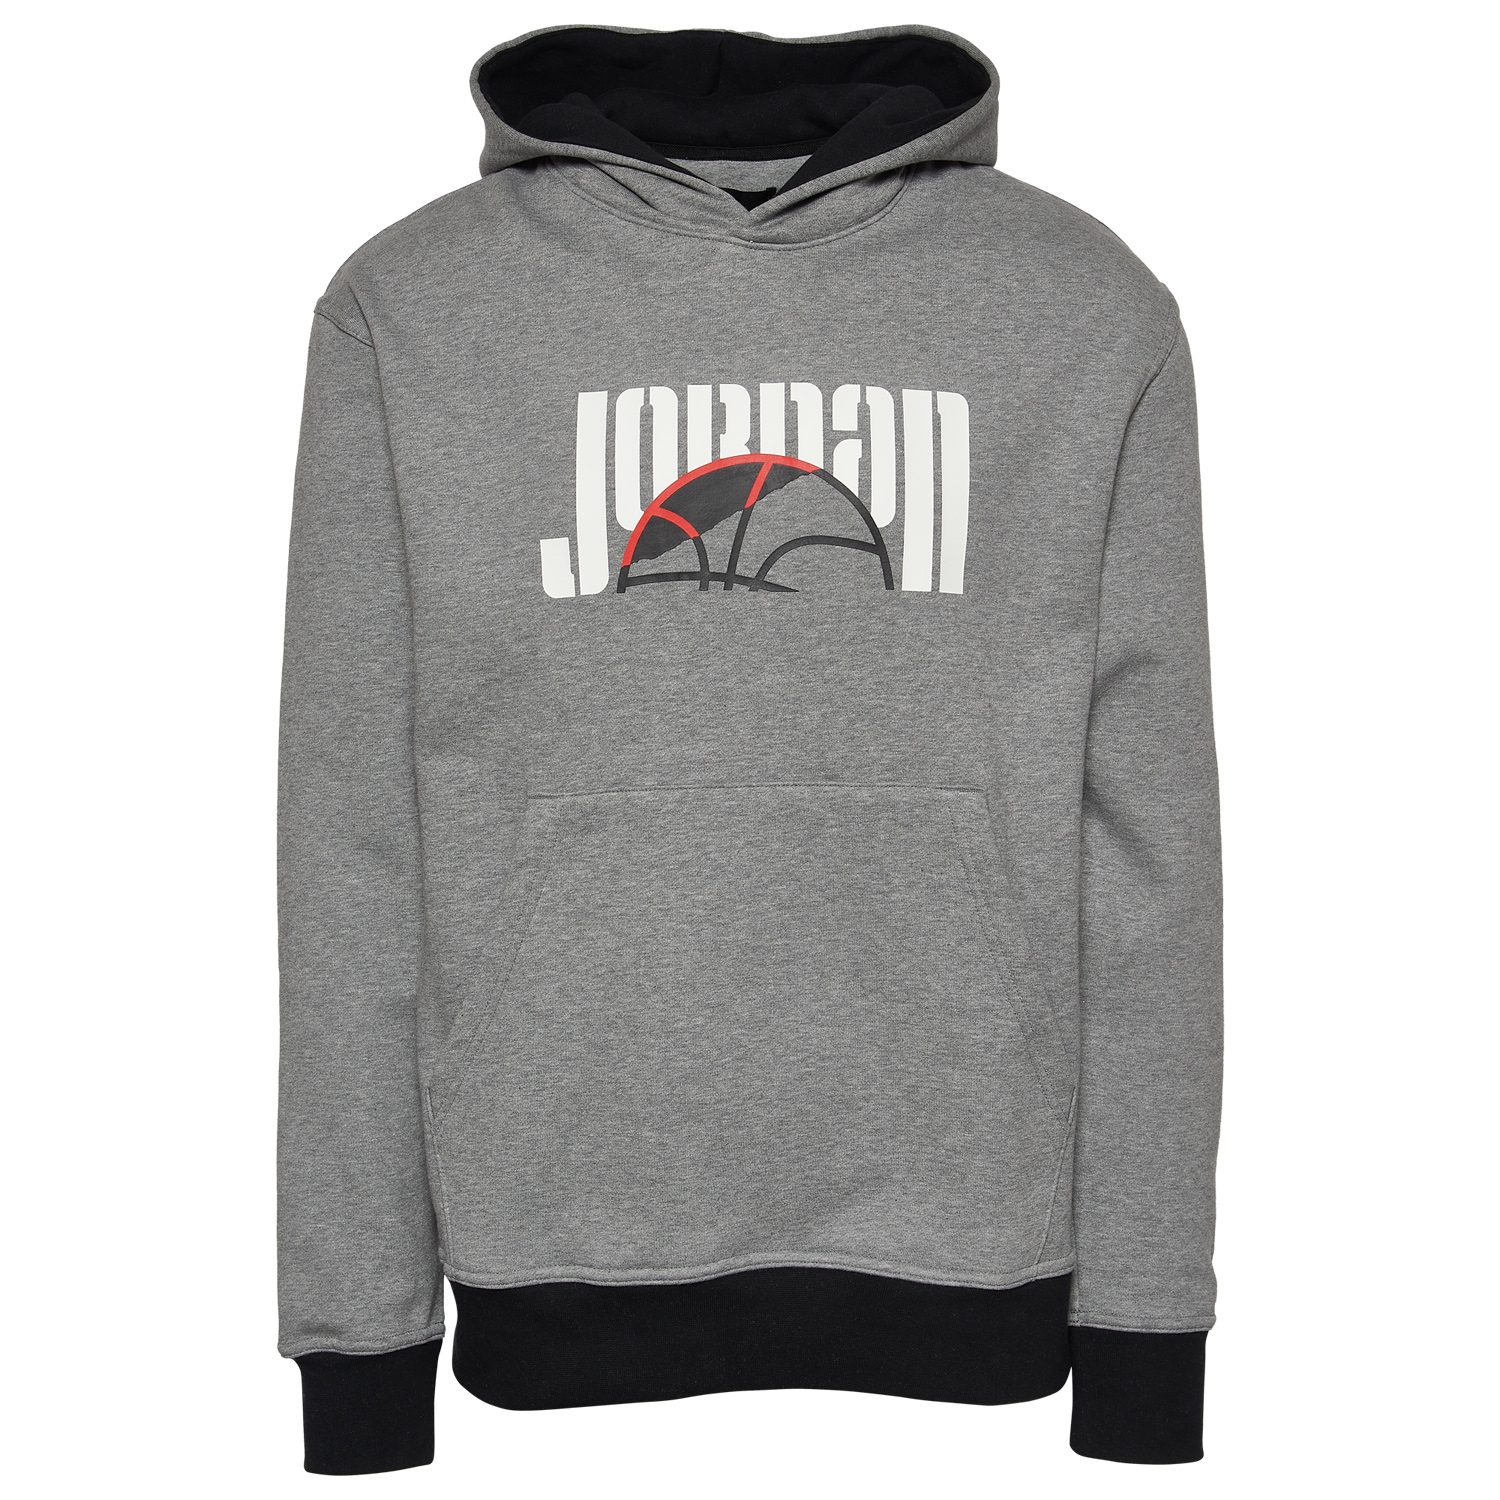 jordan-sport-dna-holiday-2021-hoodie-grey-black-1